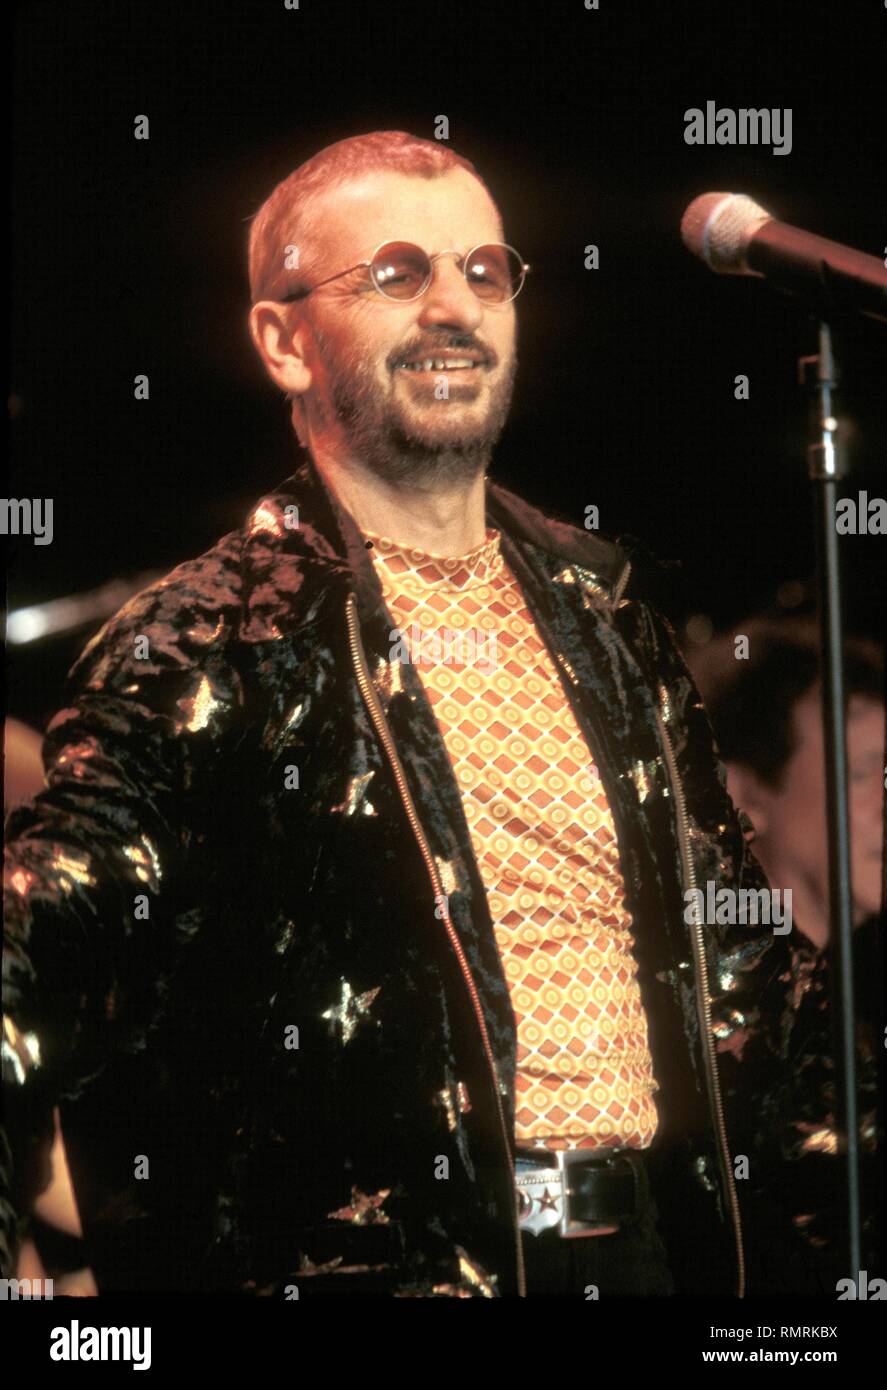 Ehemalige Beatle Schlagzeuger Ringo Starr wird gezeigt auf der Bühne während einer "live"-Konzert Auftritt mit Ringo Starr & seine All Starr Band. Stockfoto